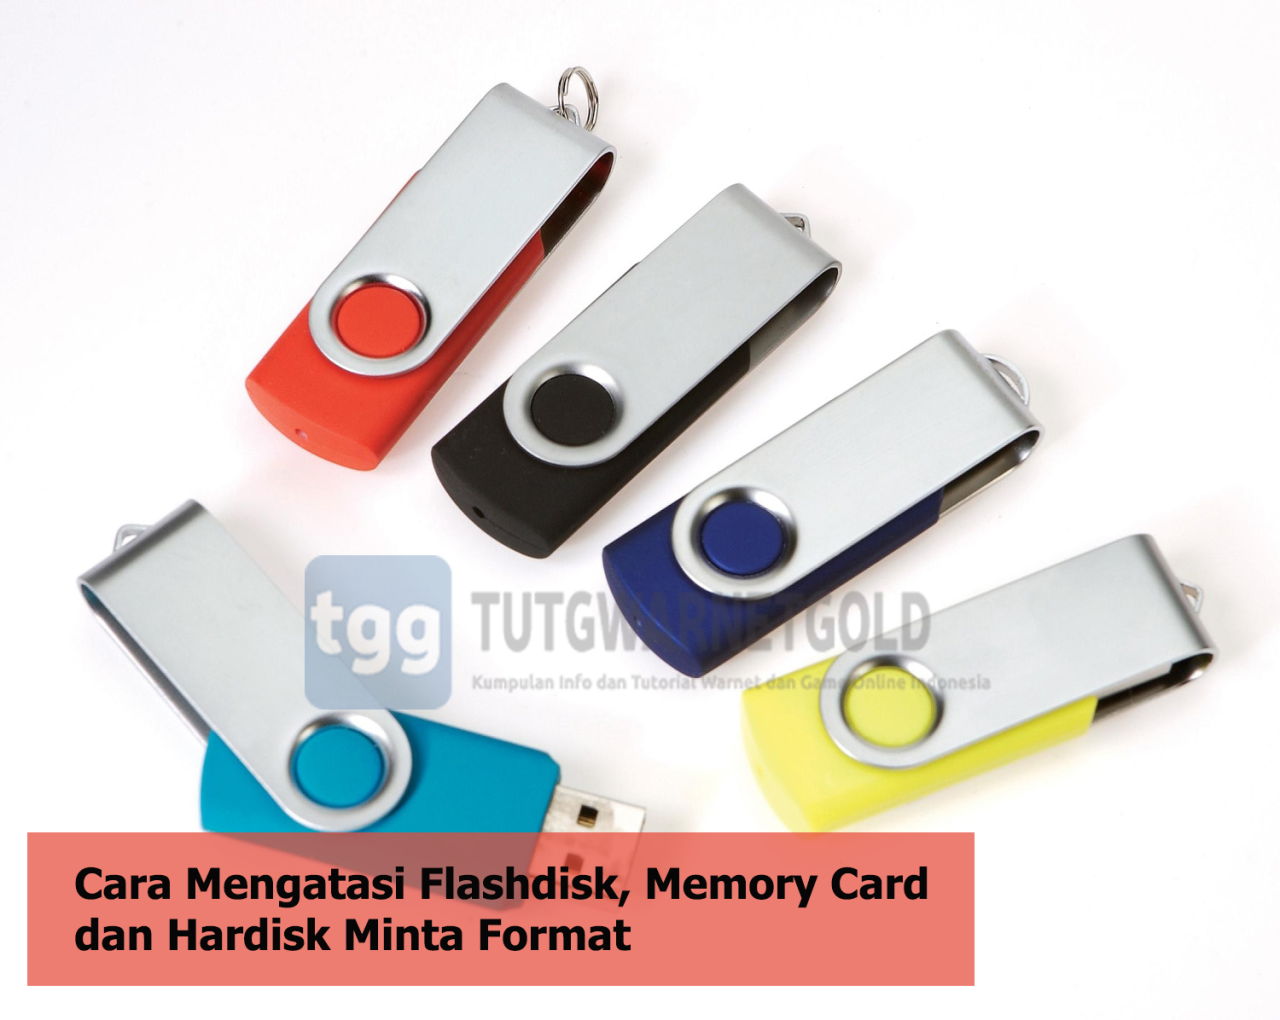 flashdisk minta hardisk cara mengatasi memory memori kartu